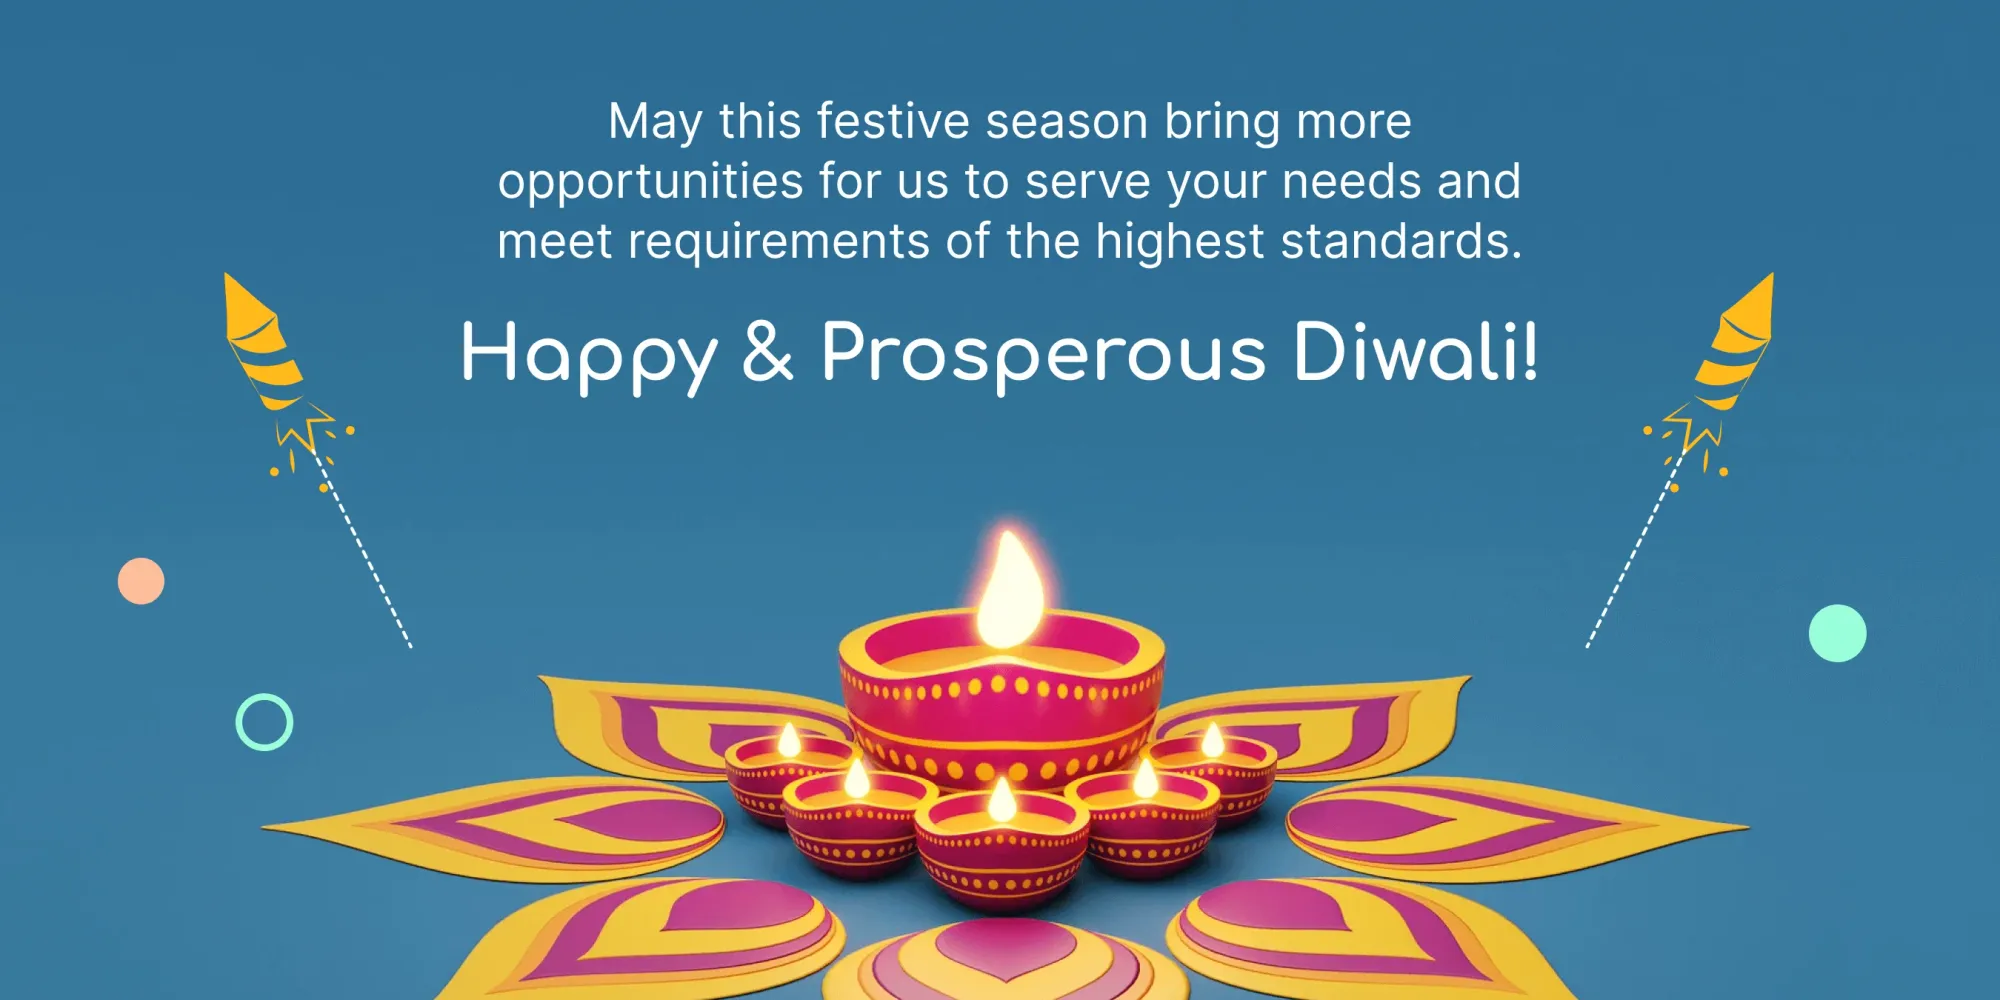 Großzügige Diwali-Wünsche für Kunden